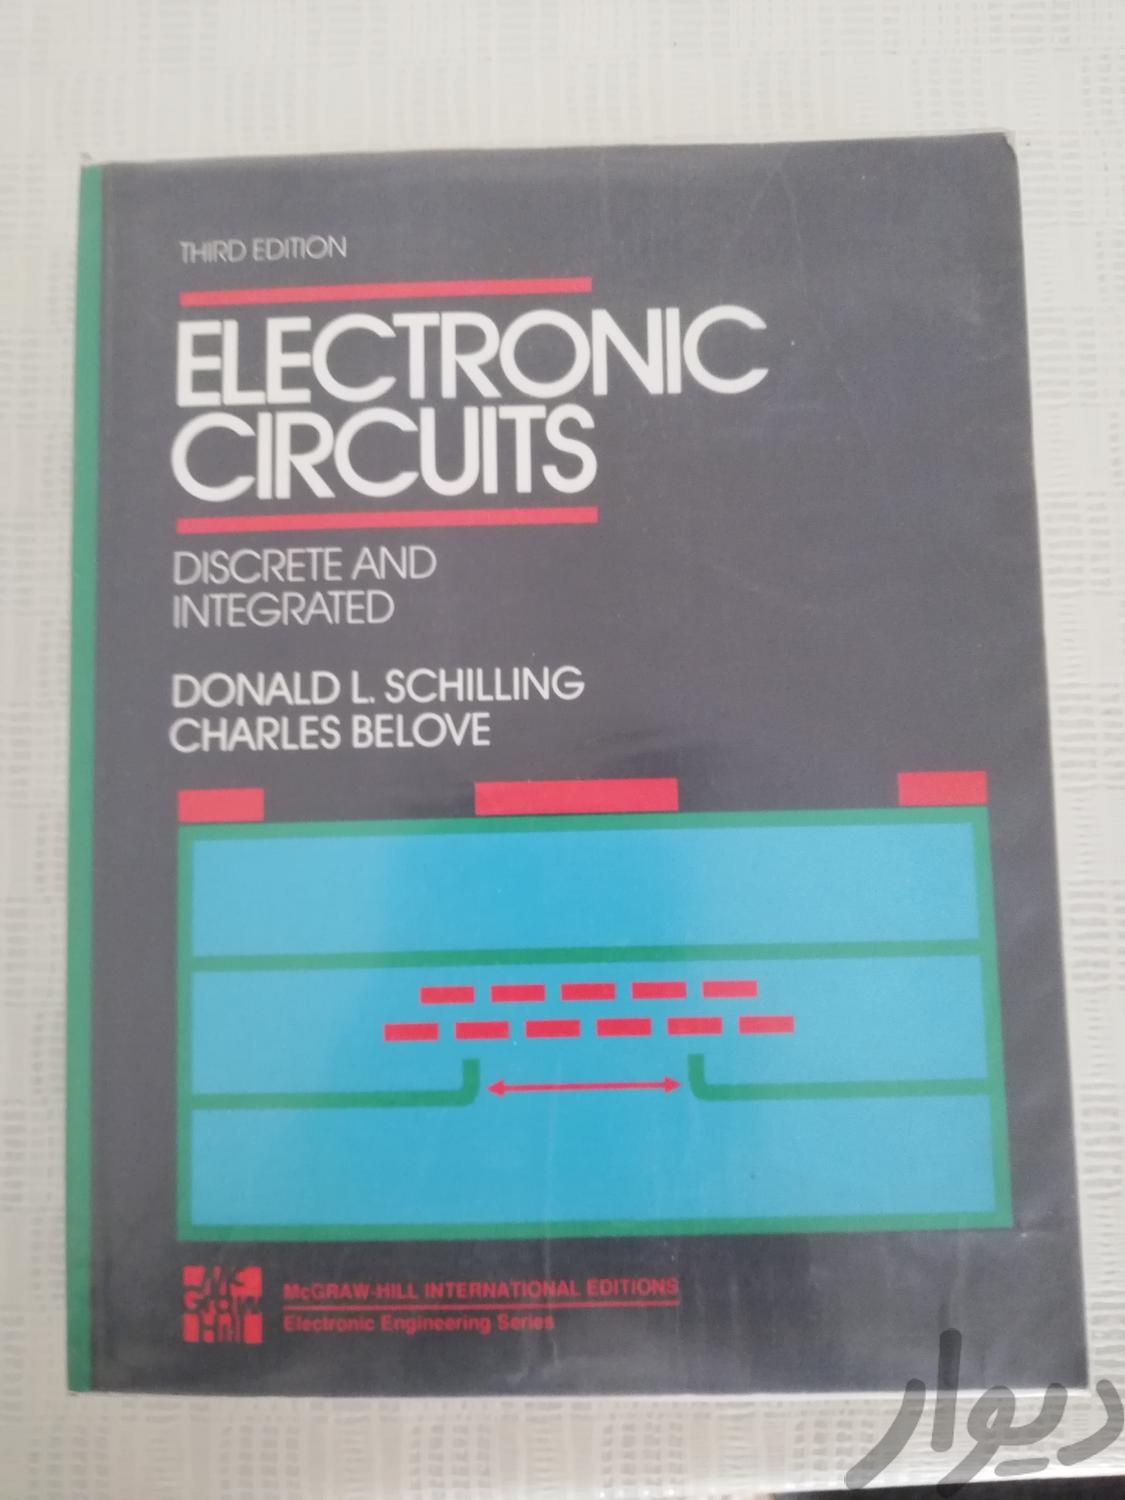 تعدادی کتاب تخصصی نایاب رشته مهندسی برق-الکترونیک|کتاب و مجله آموزشی|تهران, دبستان|دیوار